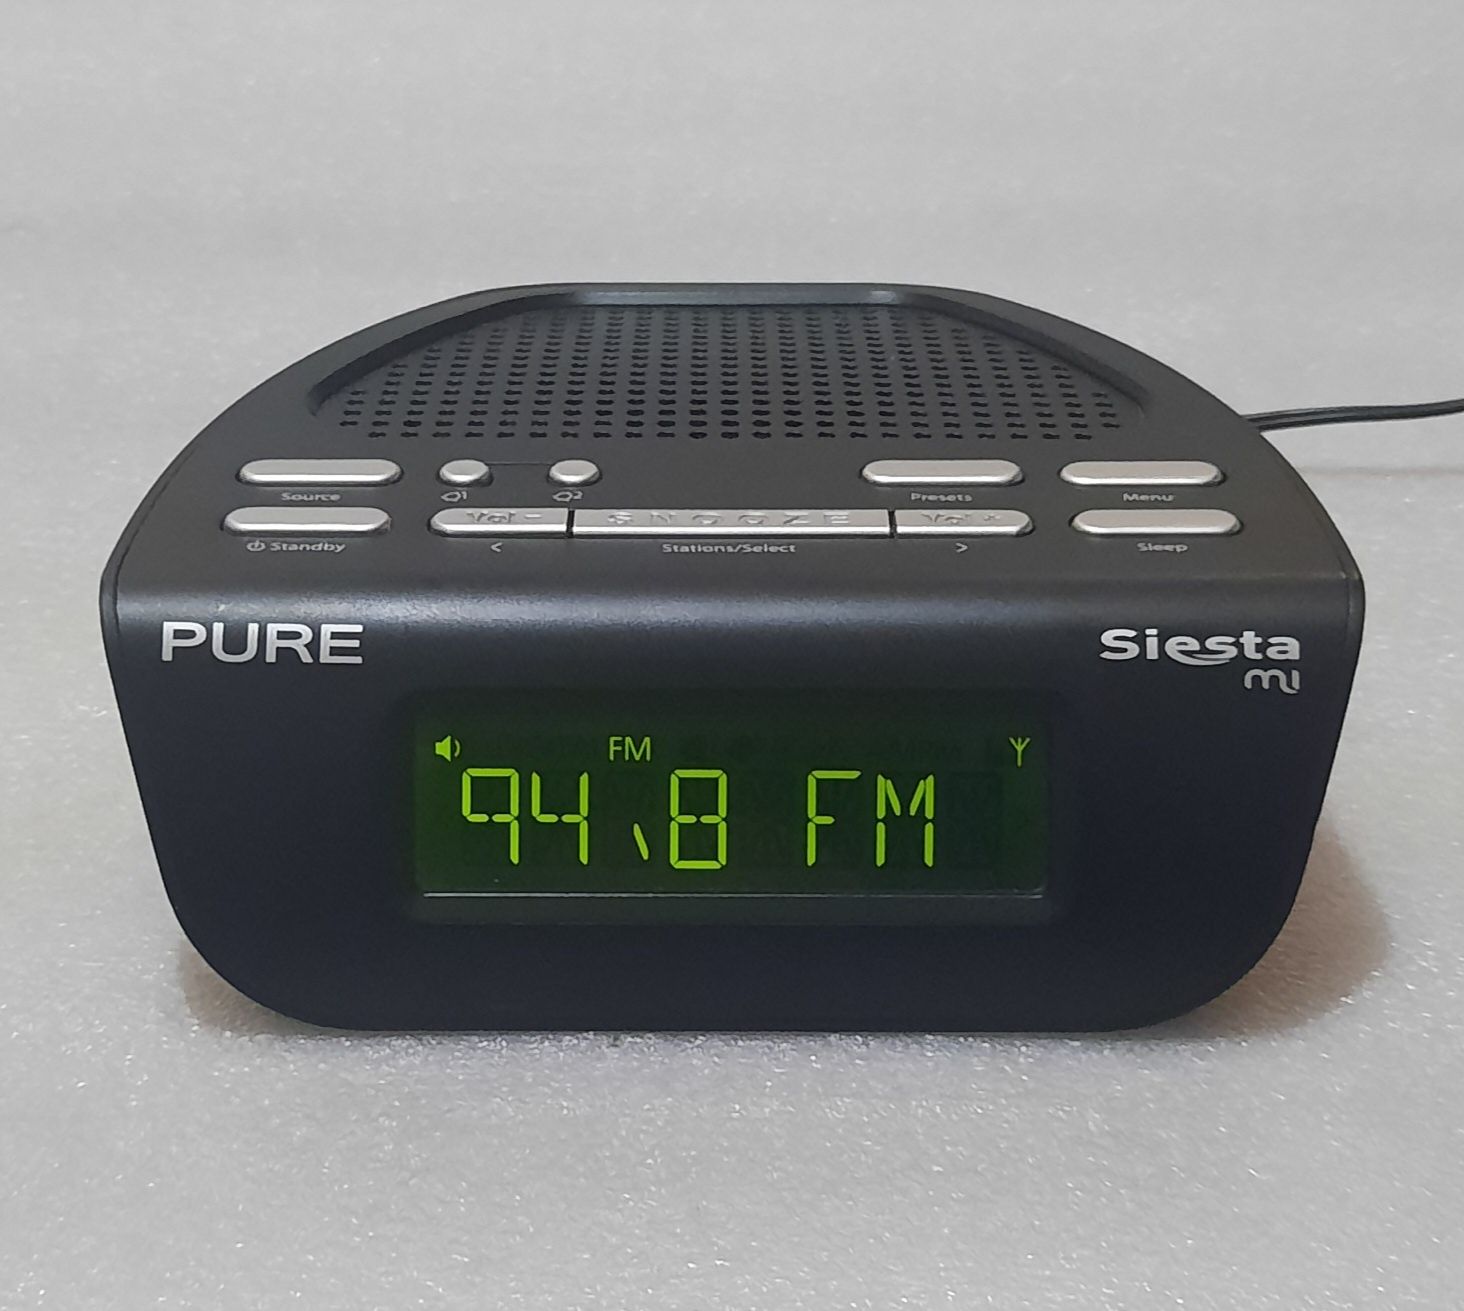 Ceas cu alarmă și radio digital Pure Siesta Mi Series 2 DAB/FM